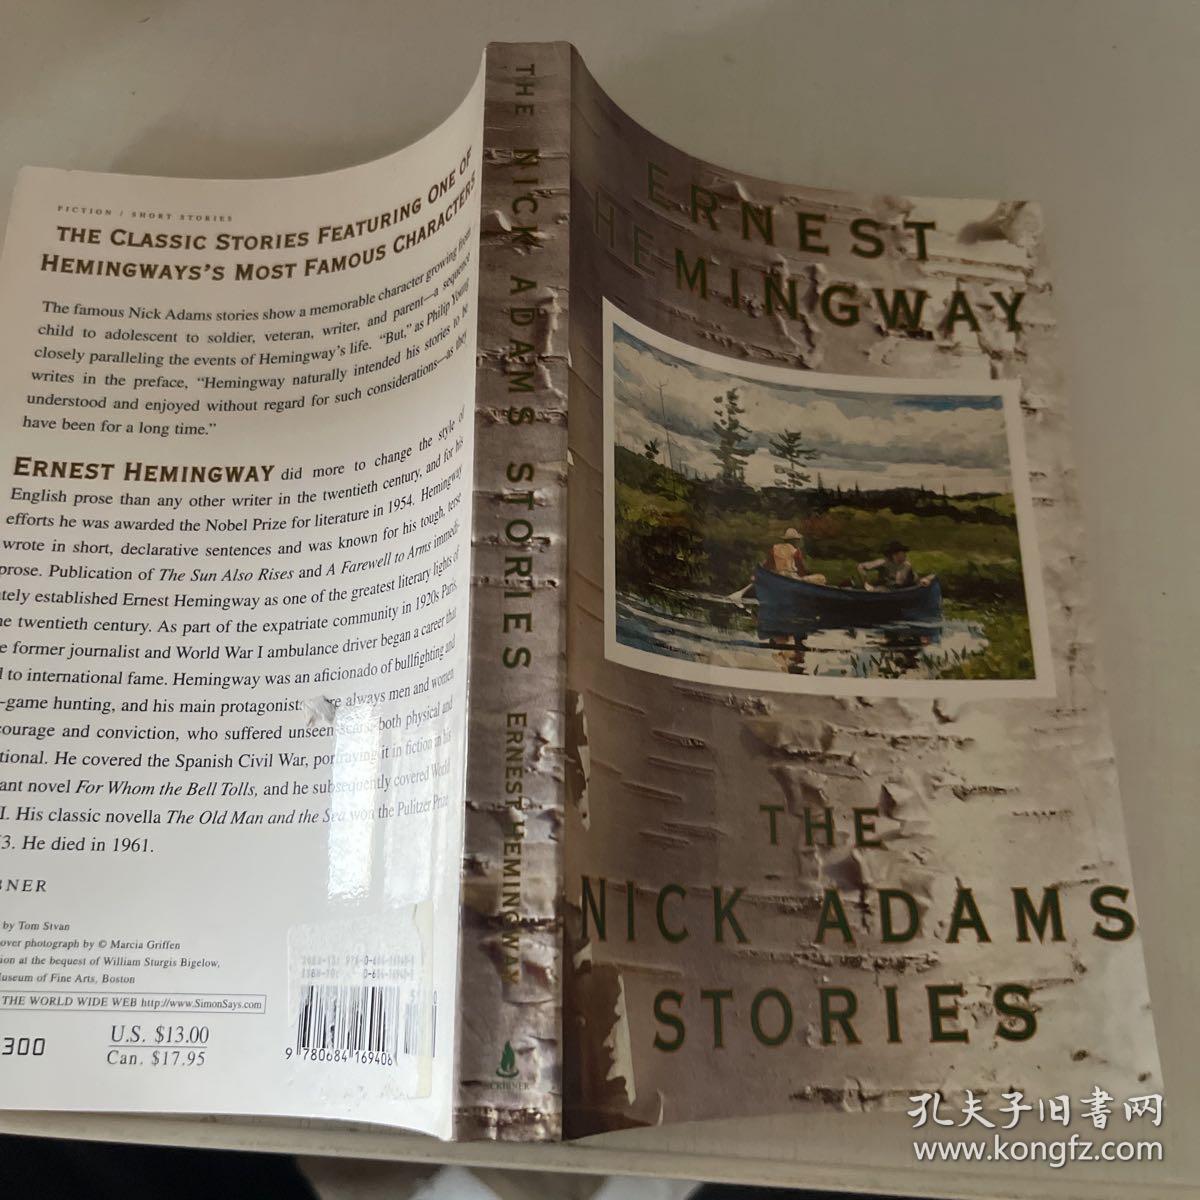 ERNEST HEMINGWAY;THE NICK ADAMS STORIES